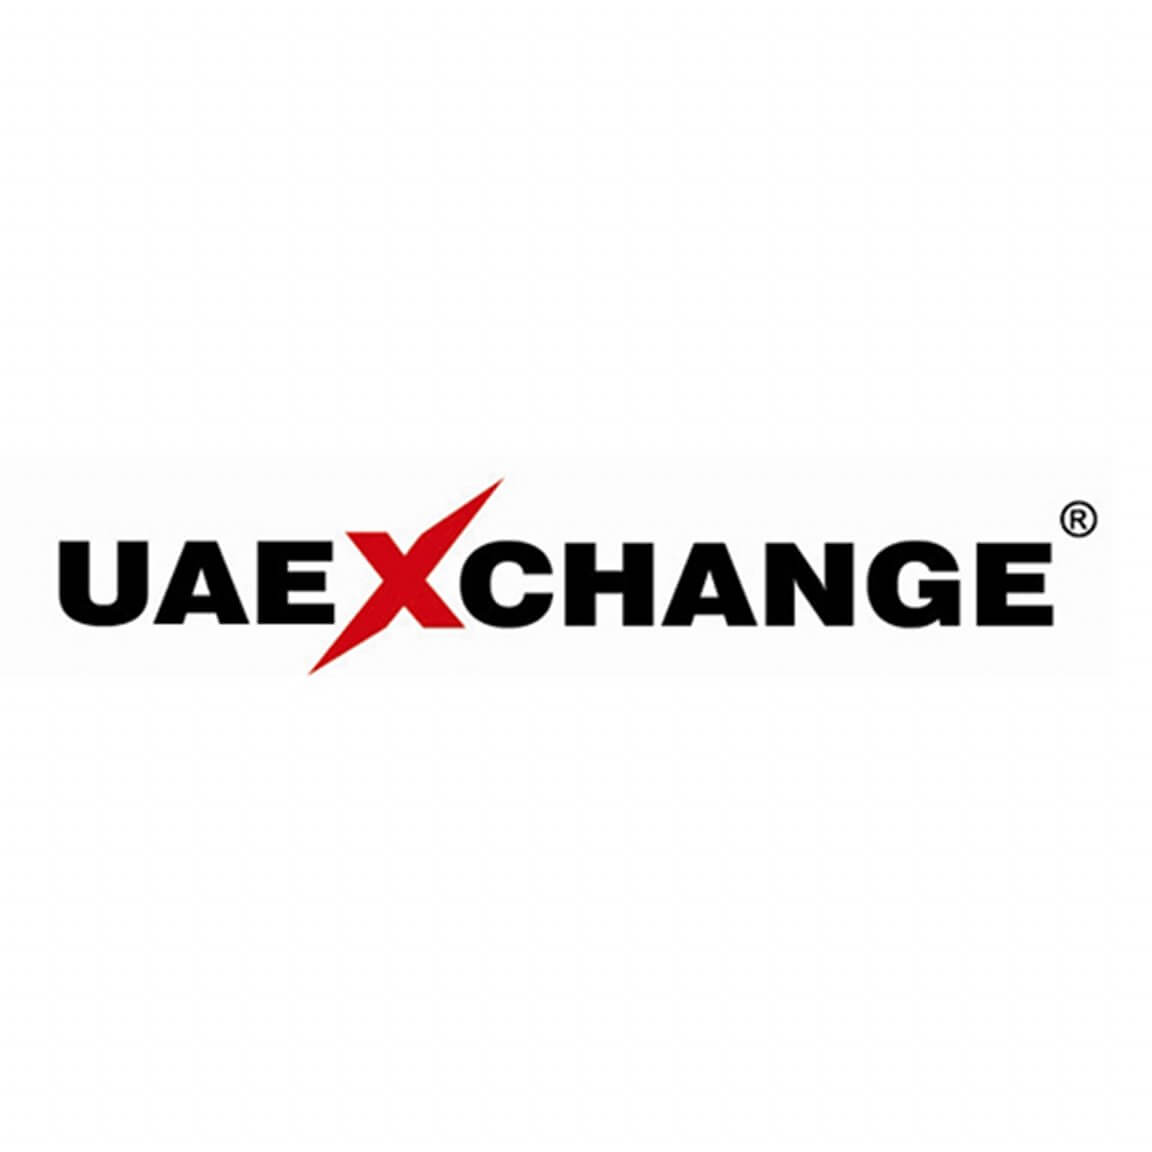 UAE Xchange - Burjuman